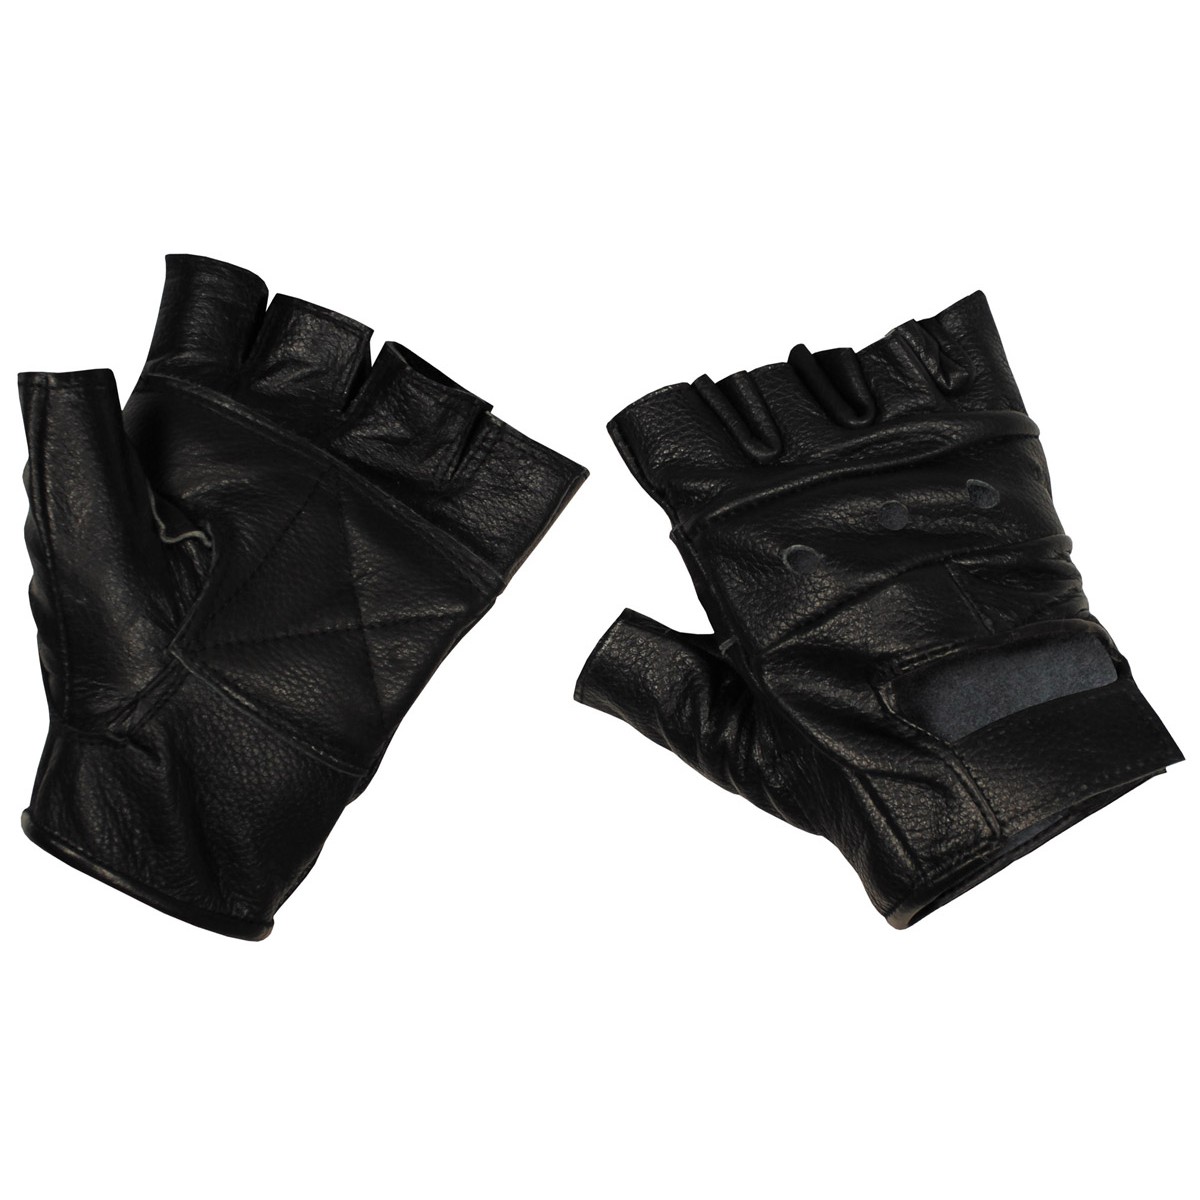 Rukavice bez prstů MFH Biker - černé, XL